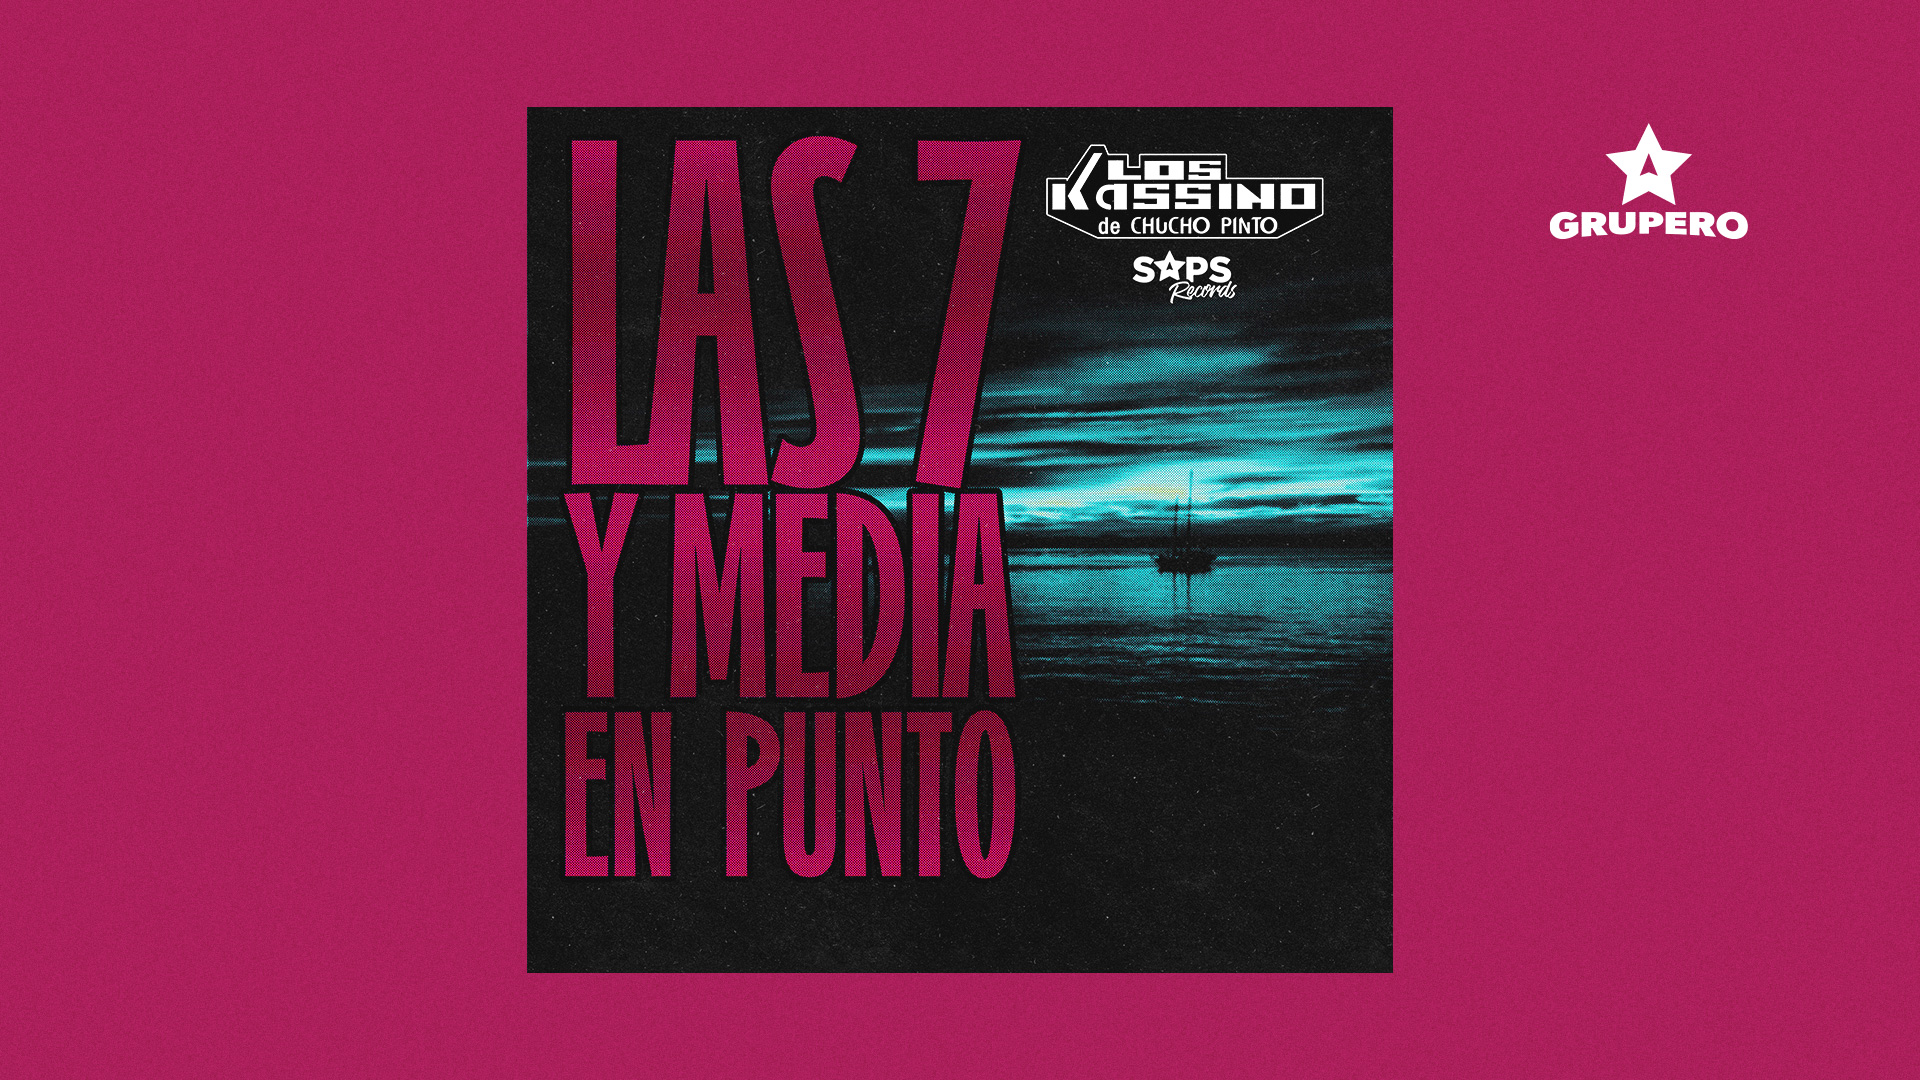 Letra “Las 7 Y Media En Punto” – Los Kassino De Chucho Pinto